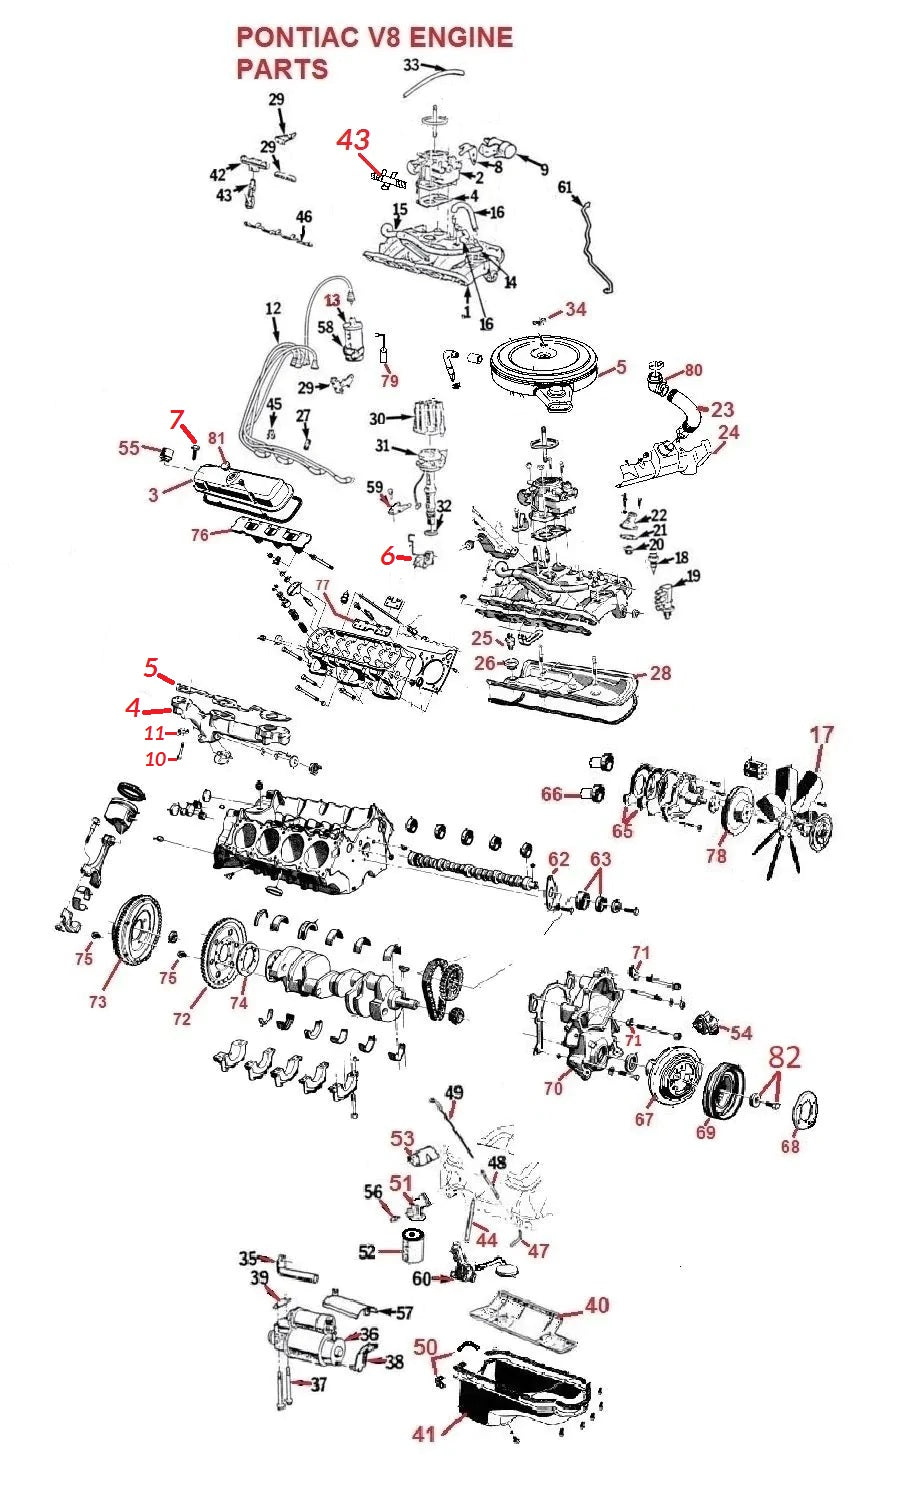 Pontiac V8 Engine Diagram - Wiring Diagram